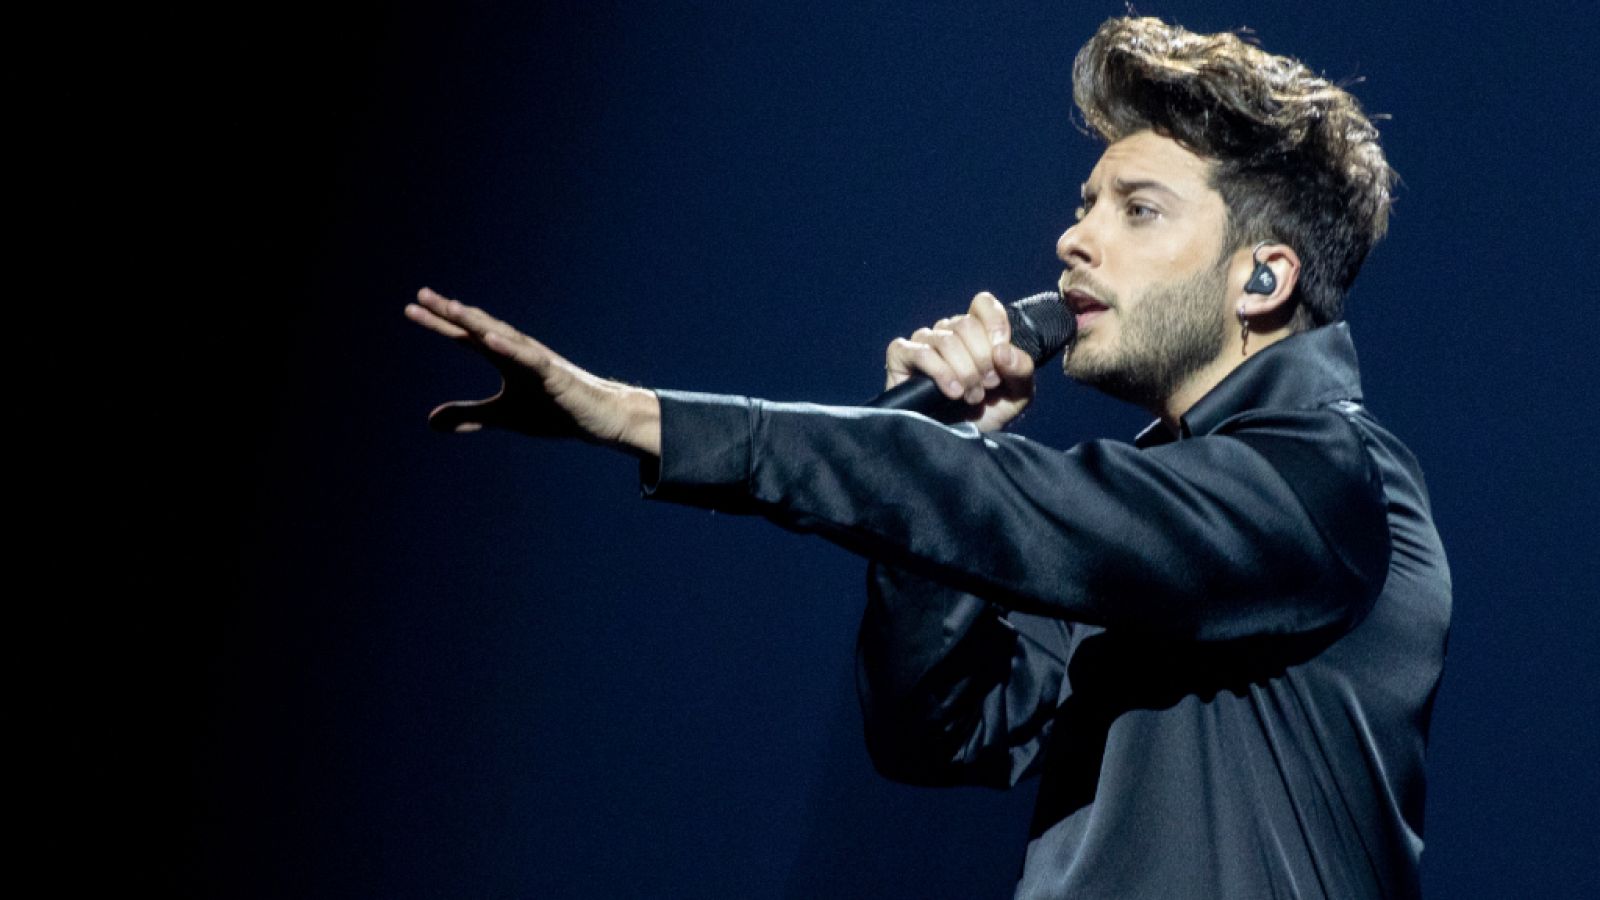 Eurovisión 2021 - España: Blas Cantó interpreta "Voy a quedarme"